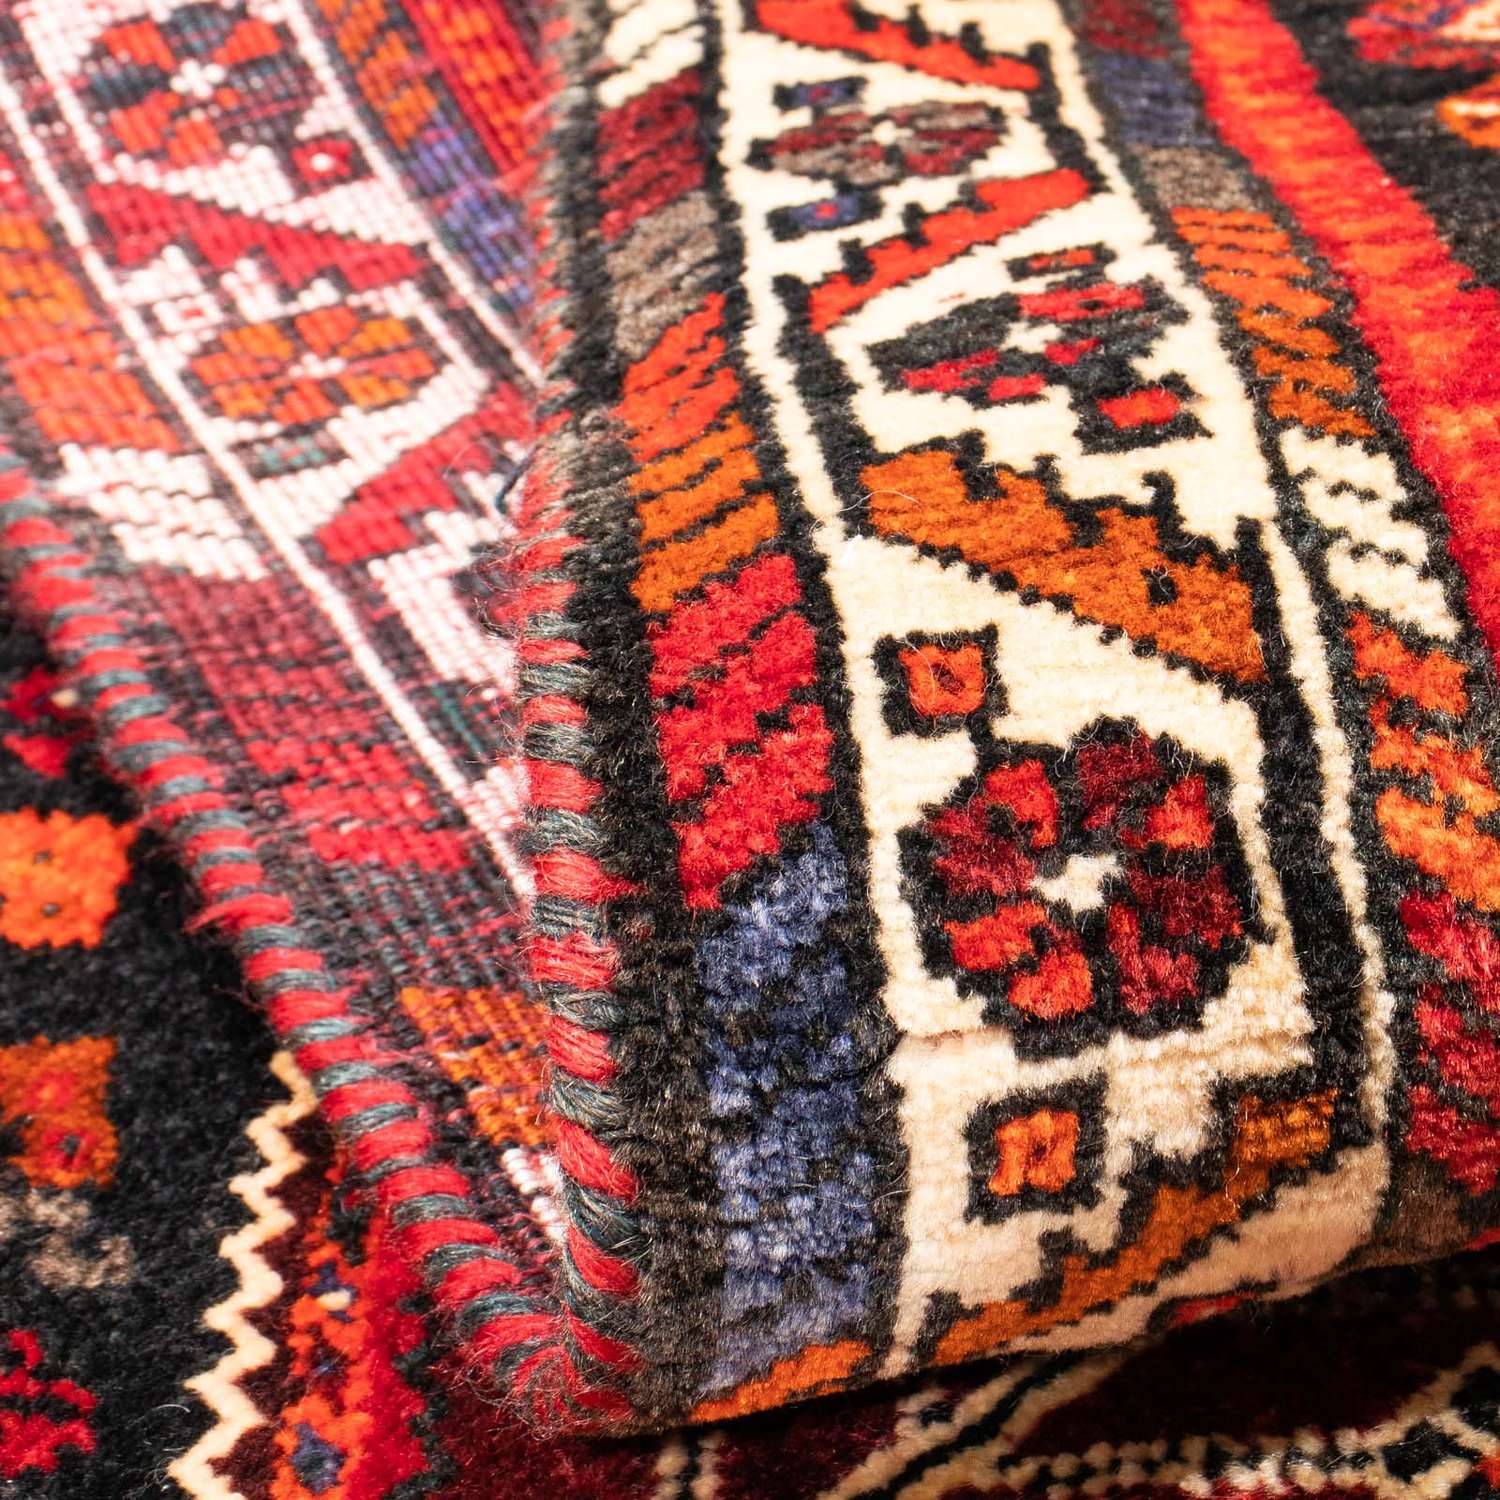 Persisk teppe - Nomadisk - 148 x 108 cm - mørk rød